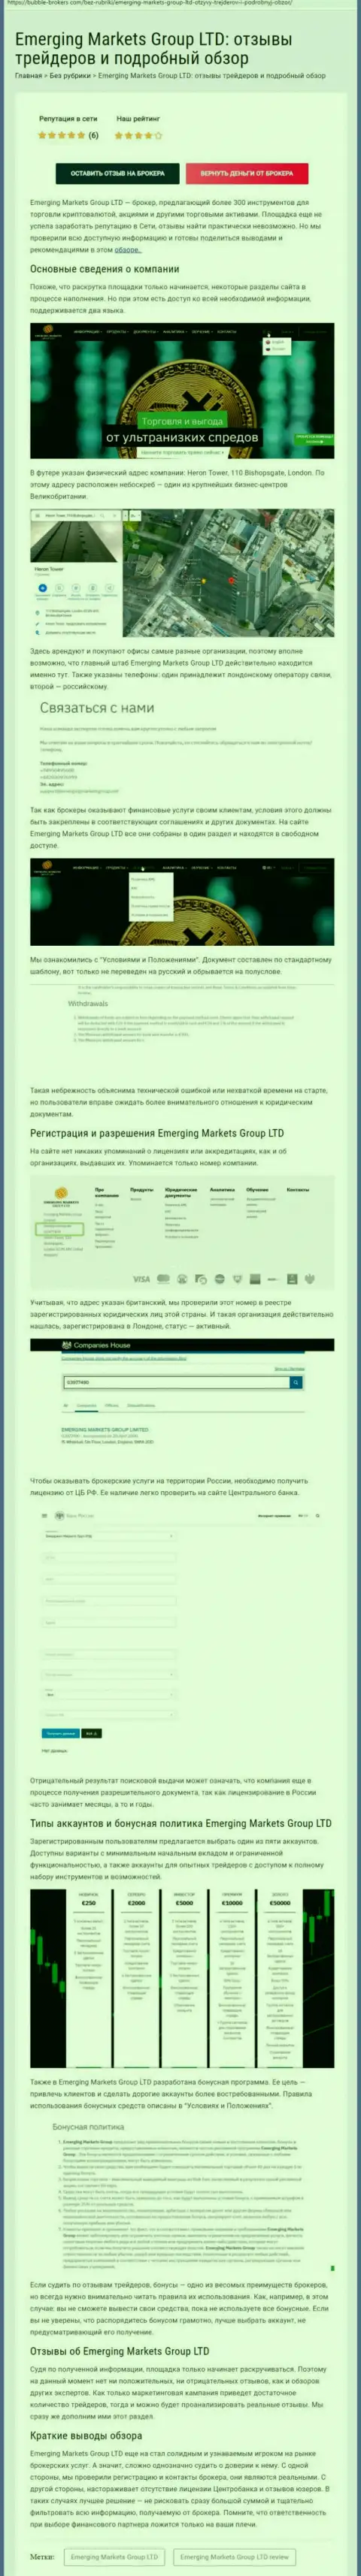 Информационный сервис Bubble Brokers Com представил анализ деятельности компании EmergingMarketsGroup